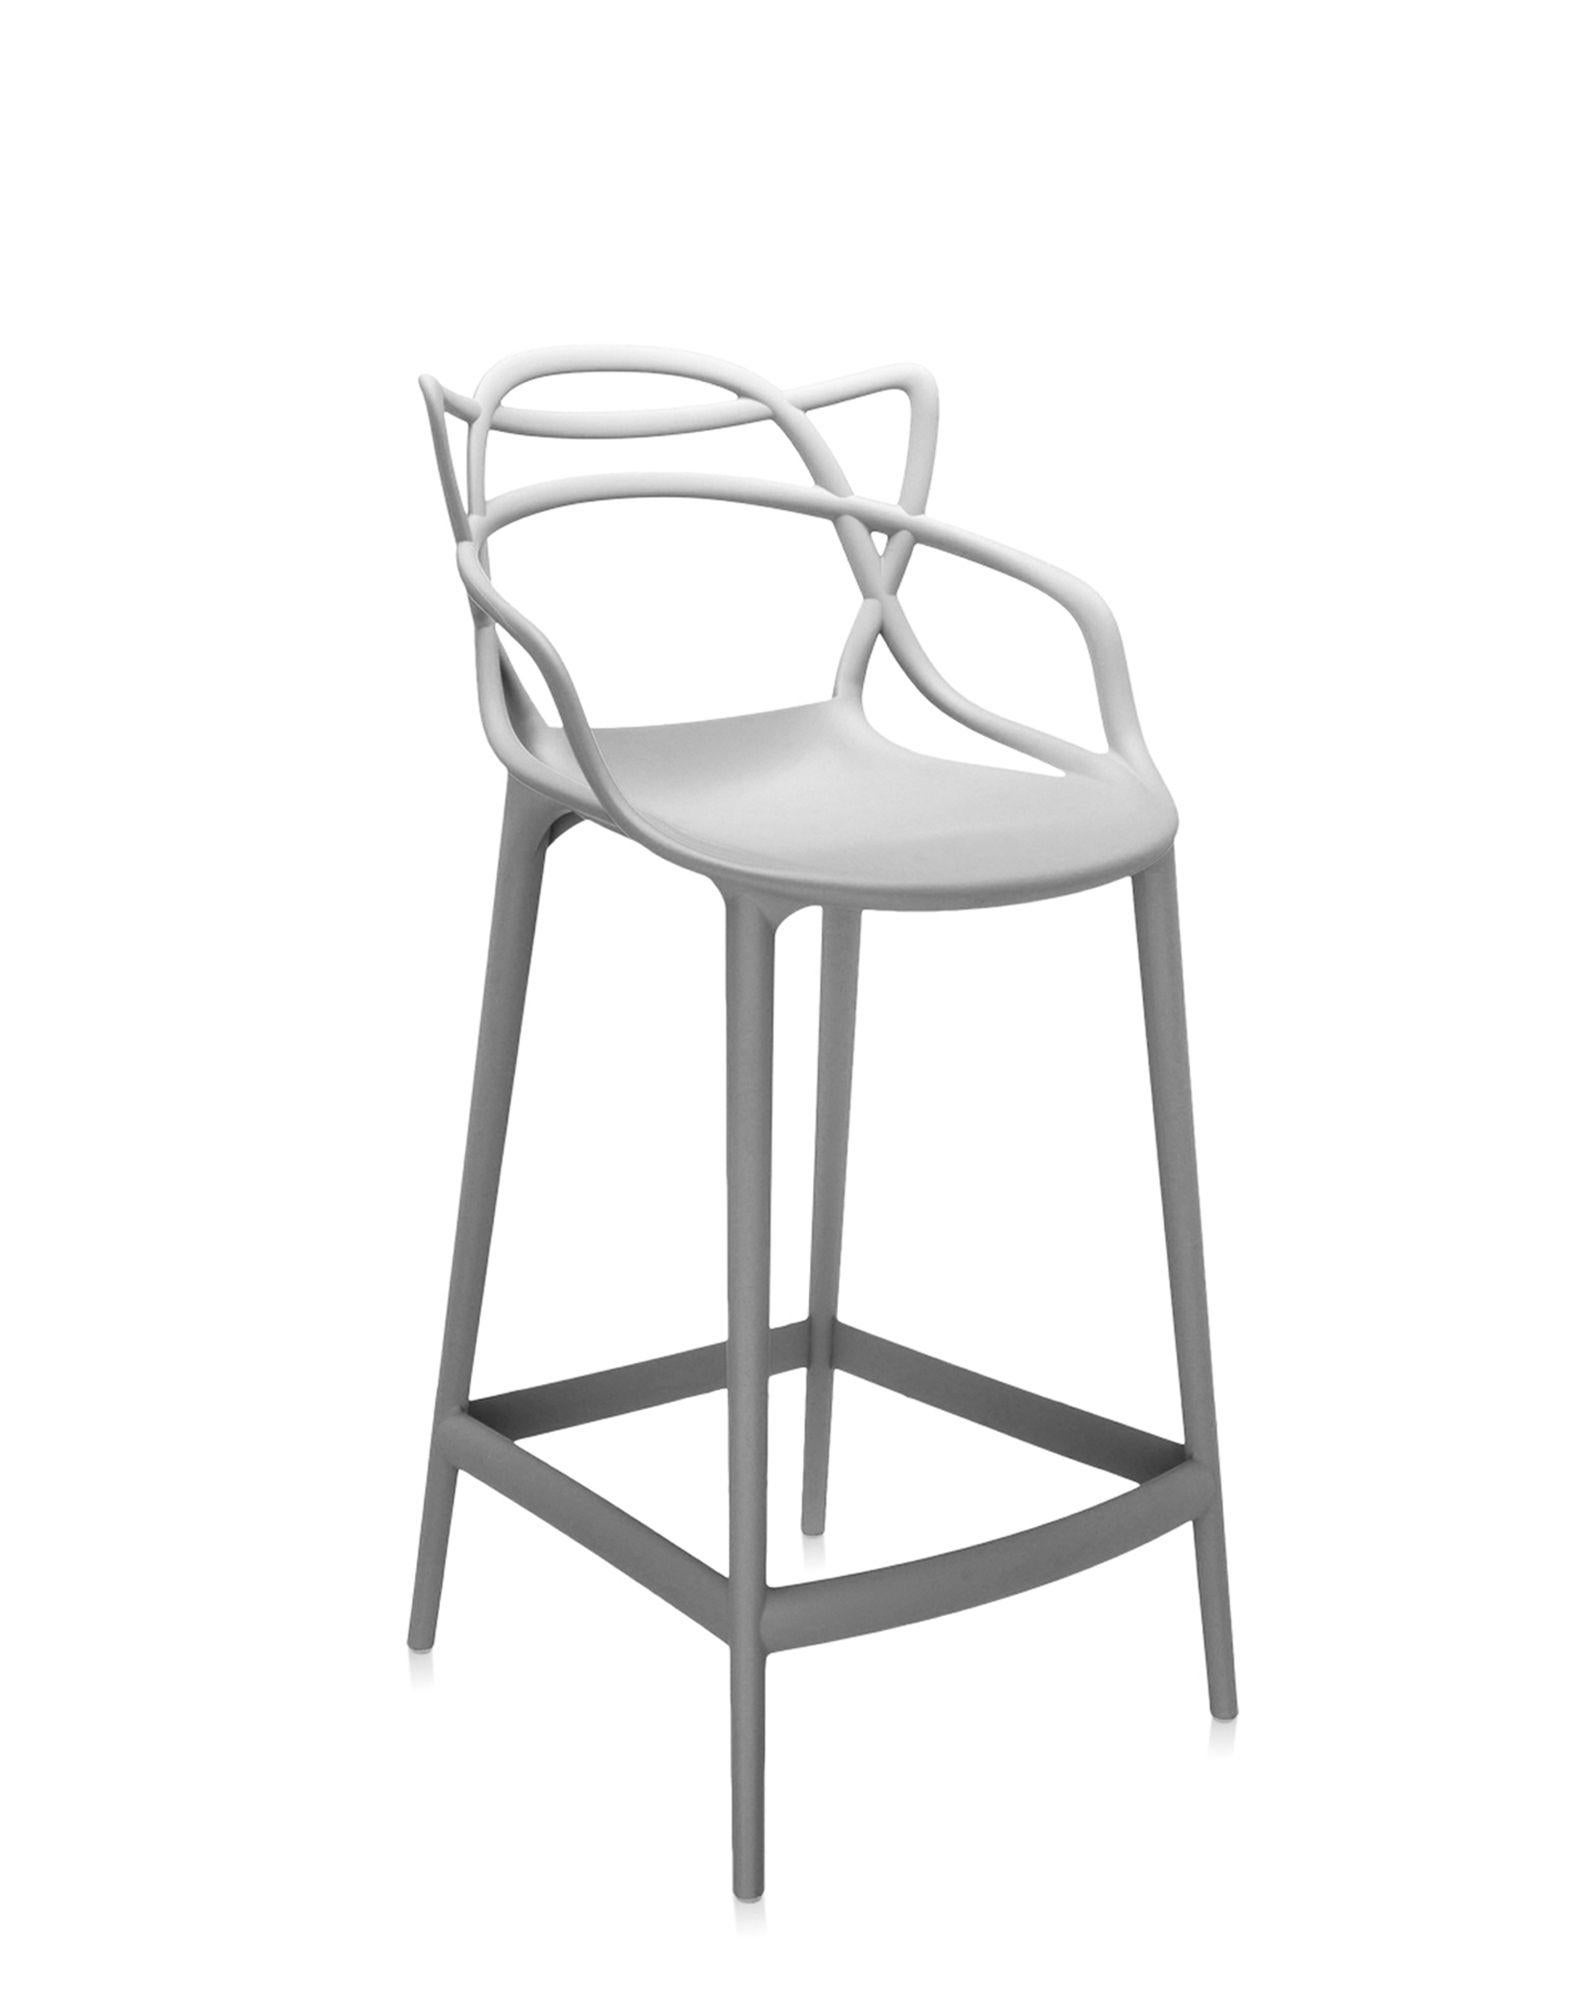 Kartell propose également une version tabouret de la chaise Masters, lauréate du Good Design Award 2010 et du Red Dot Award 2013, et best-seller mondial. Les pieds sont allongés et l'assise est rétrécie, mais l'aspect graphique incomparable du